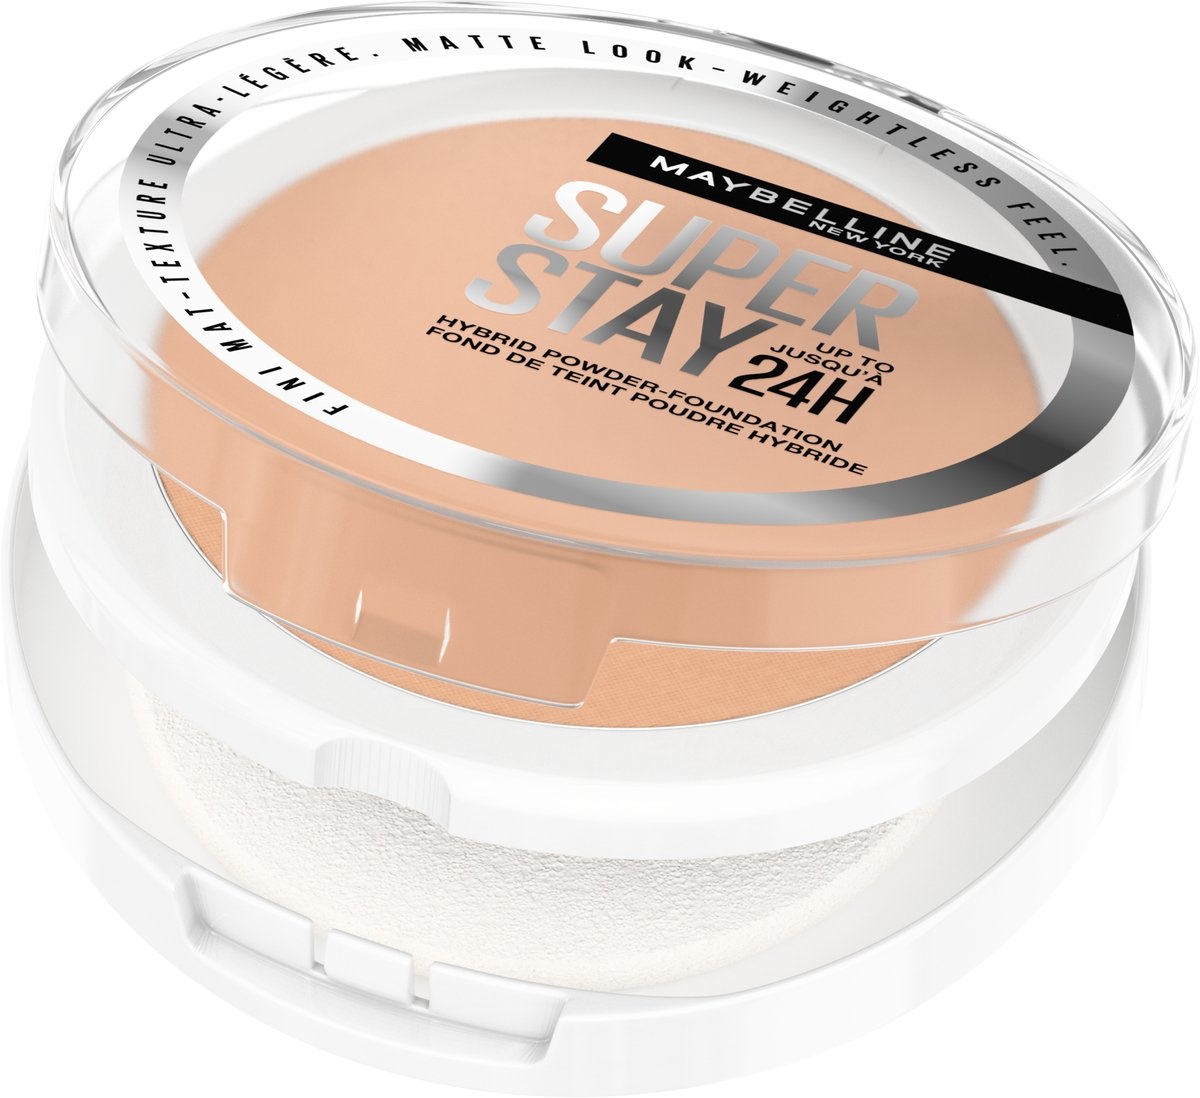 Maybelline New York - SuperStay 24H Hybrid Powder Foundation - 40